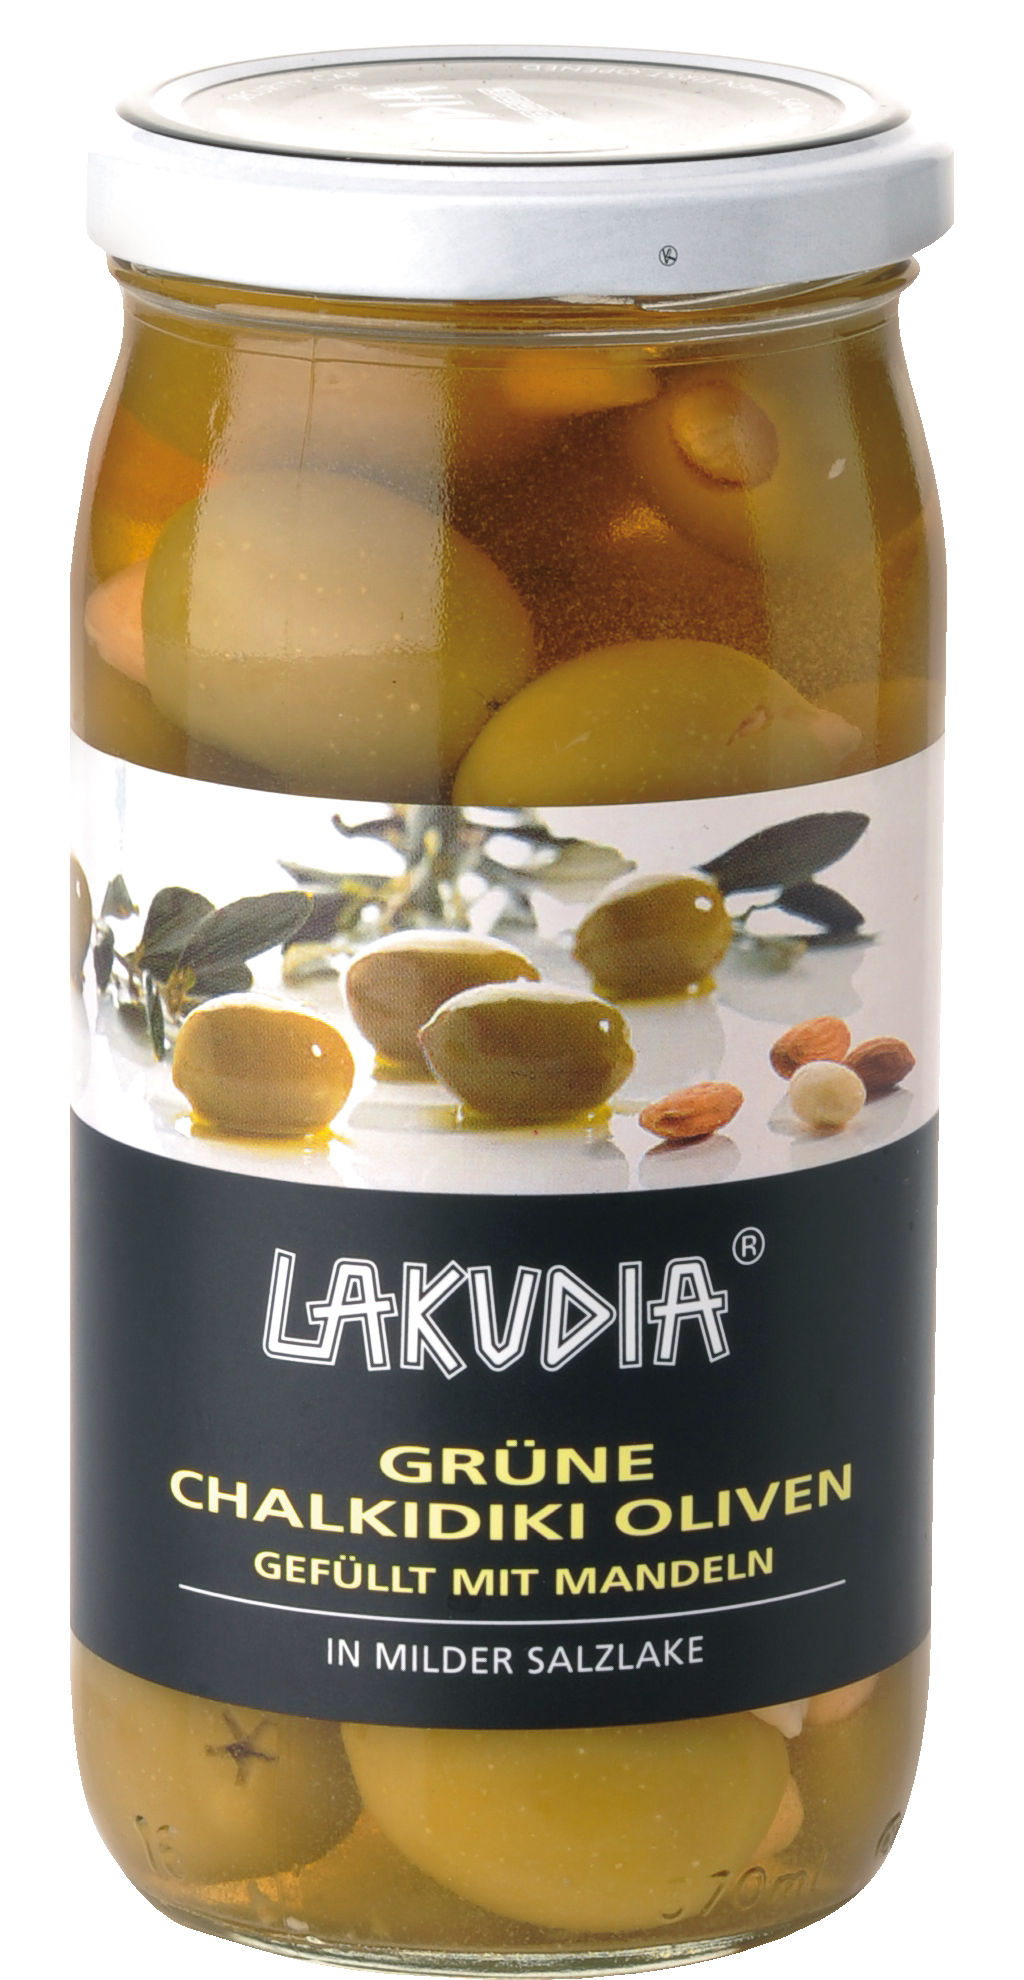 Grüne Chalkidiki Oliven gefüllt mit Mandeln